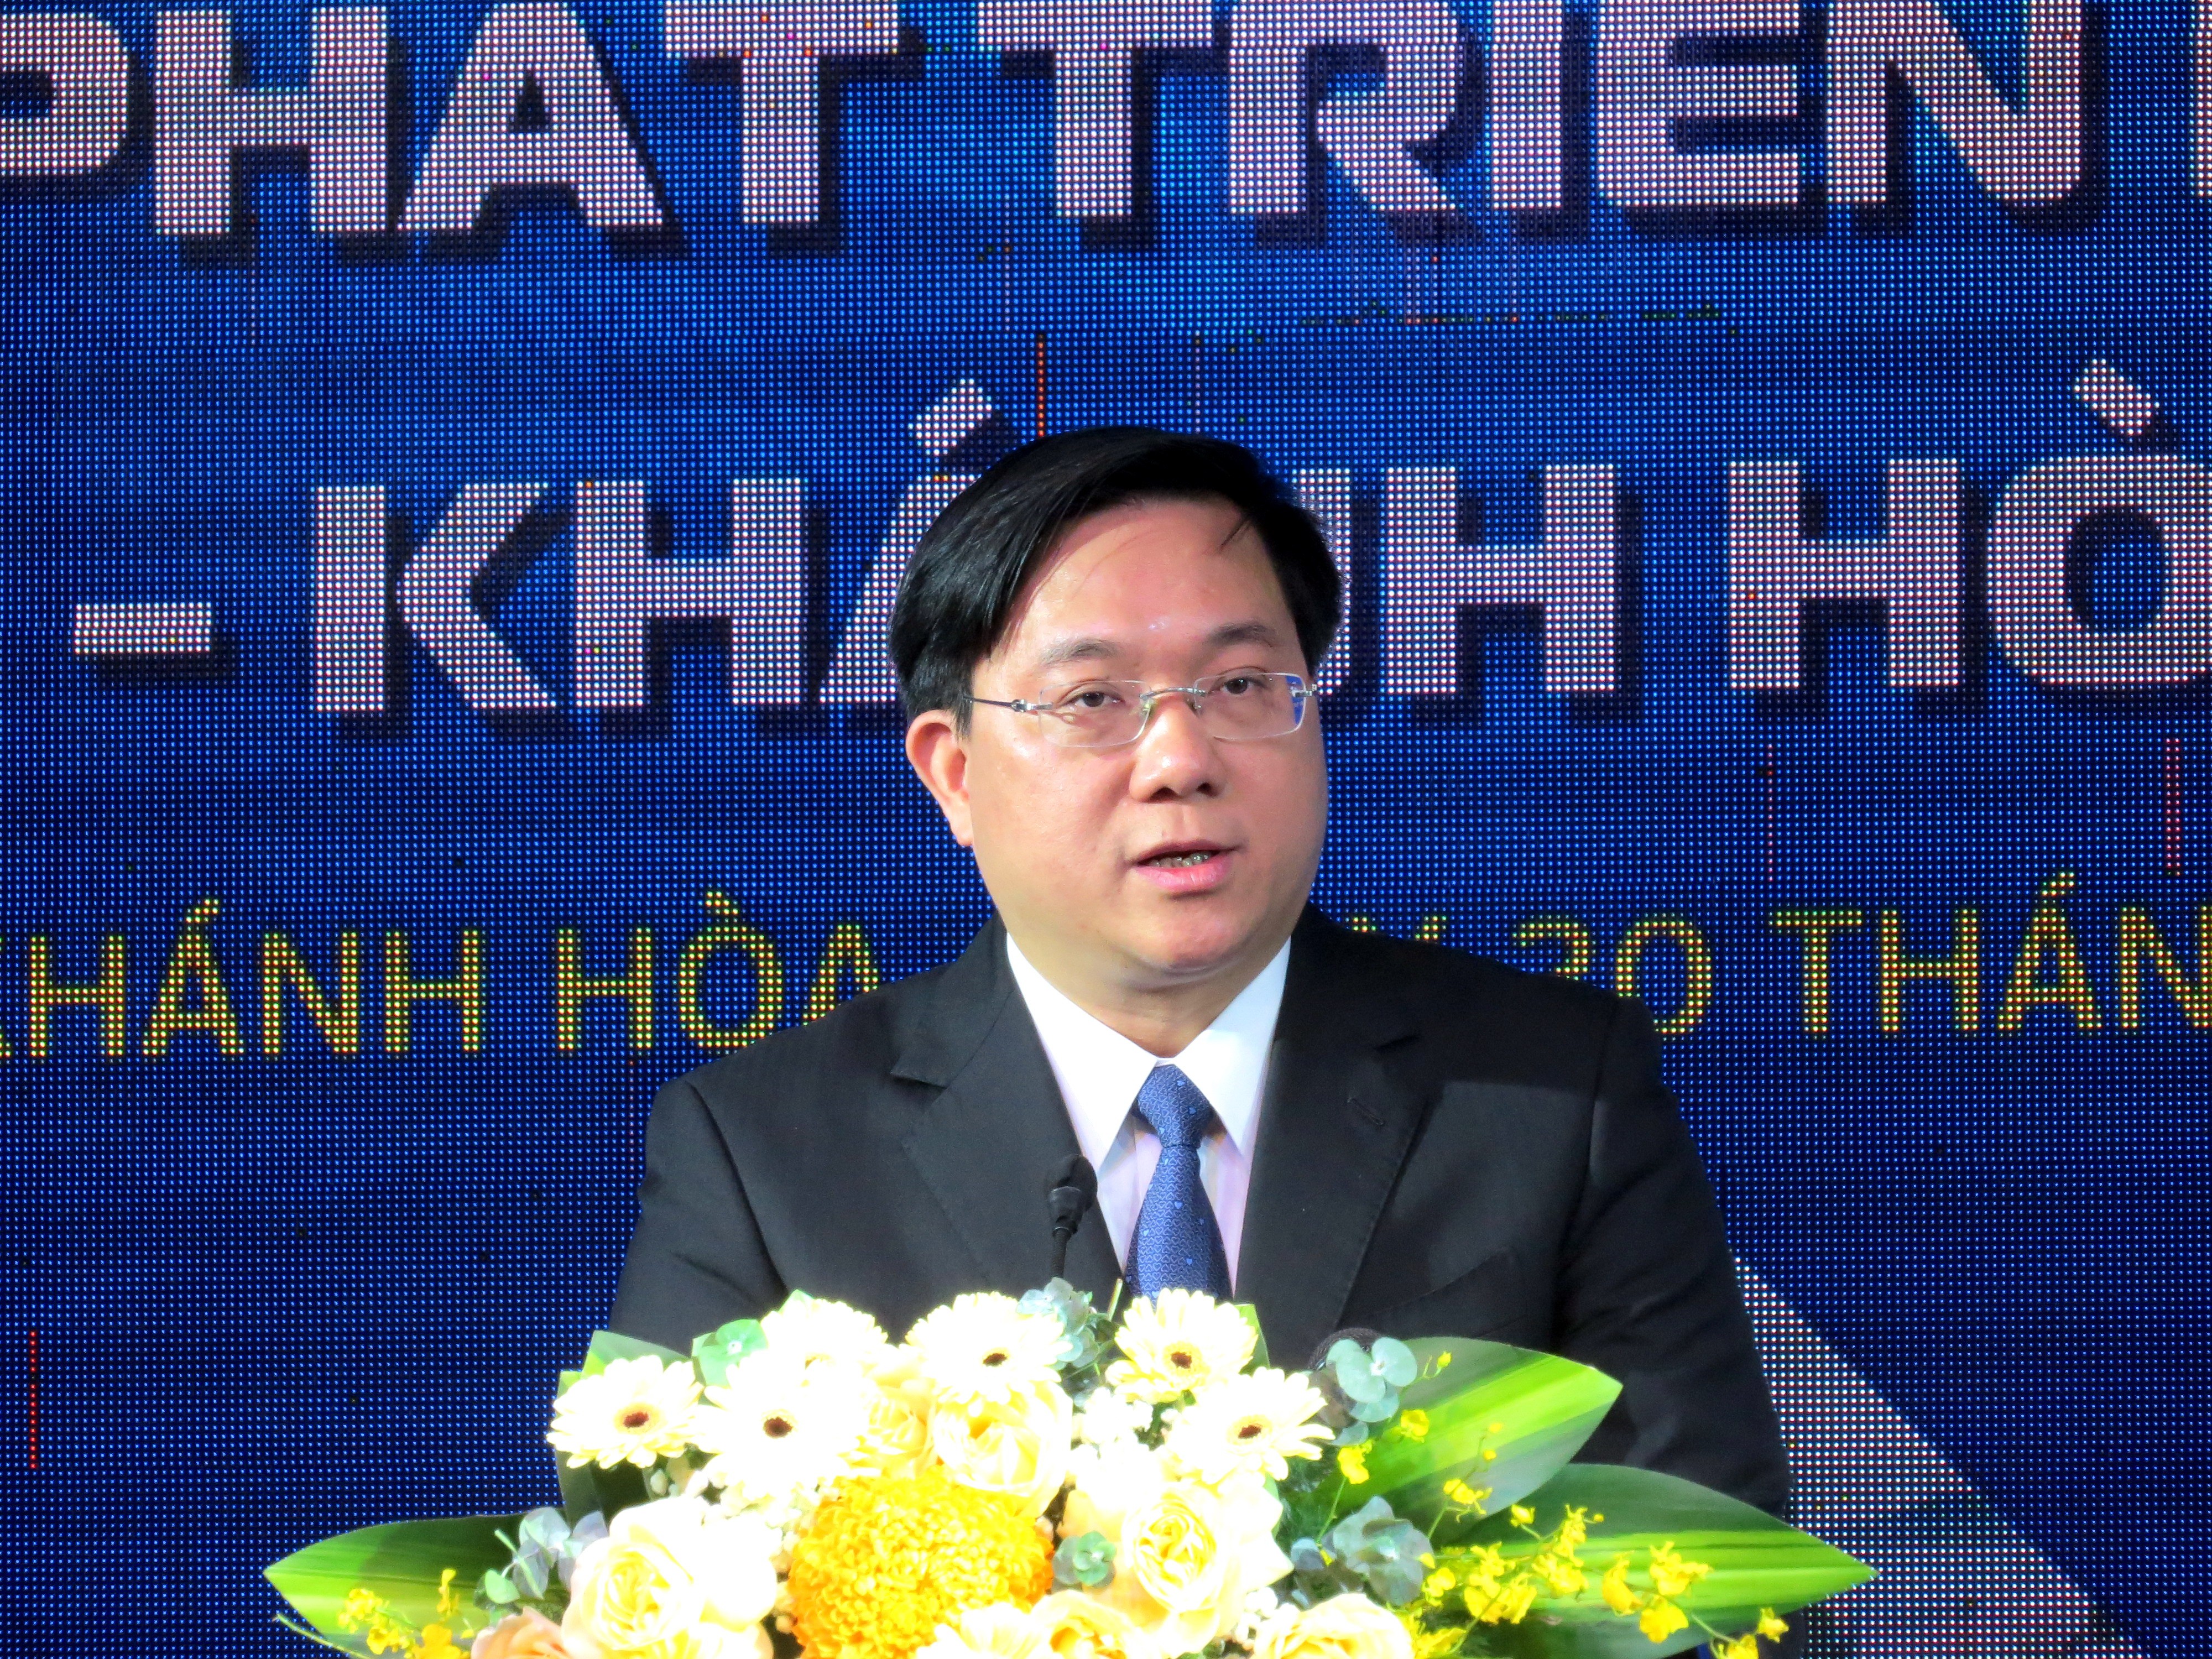 Kinh tế vĩ mô - Khánh Hòa, Phú Yên, Ninh Thuận hợp tác phát triển kinh tế - xã hội  (Hình 4).